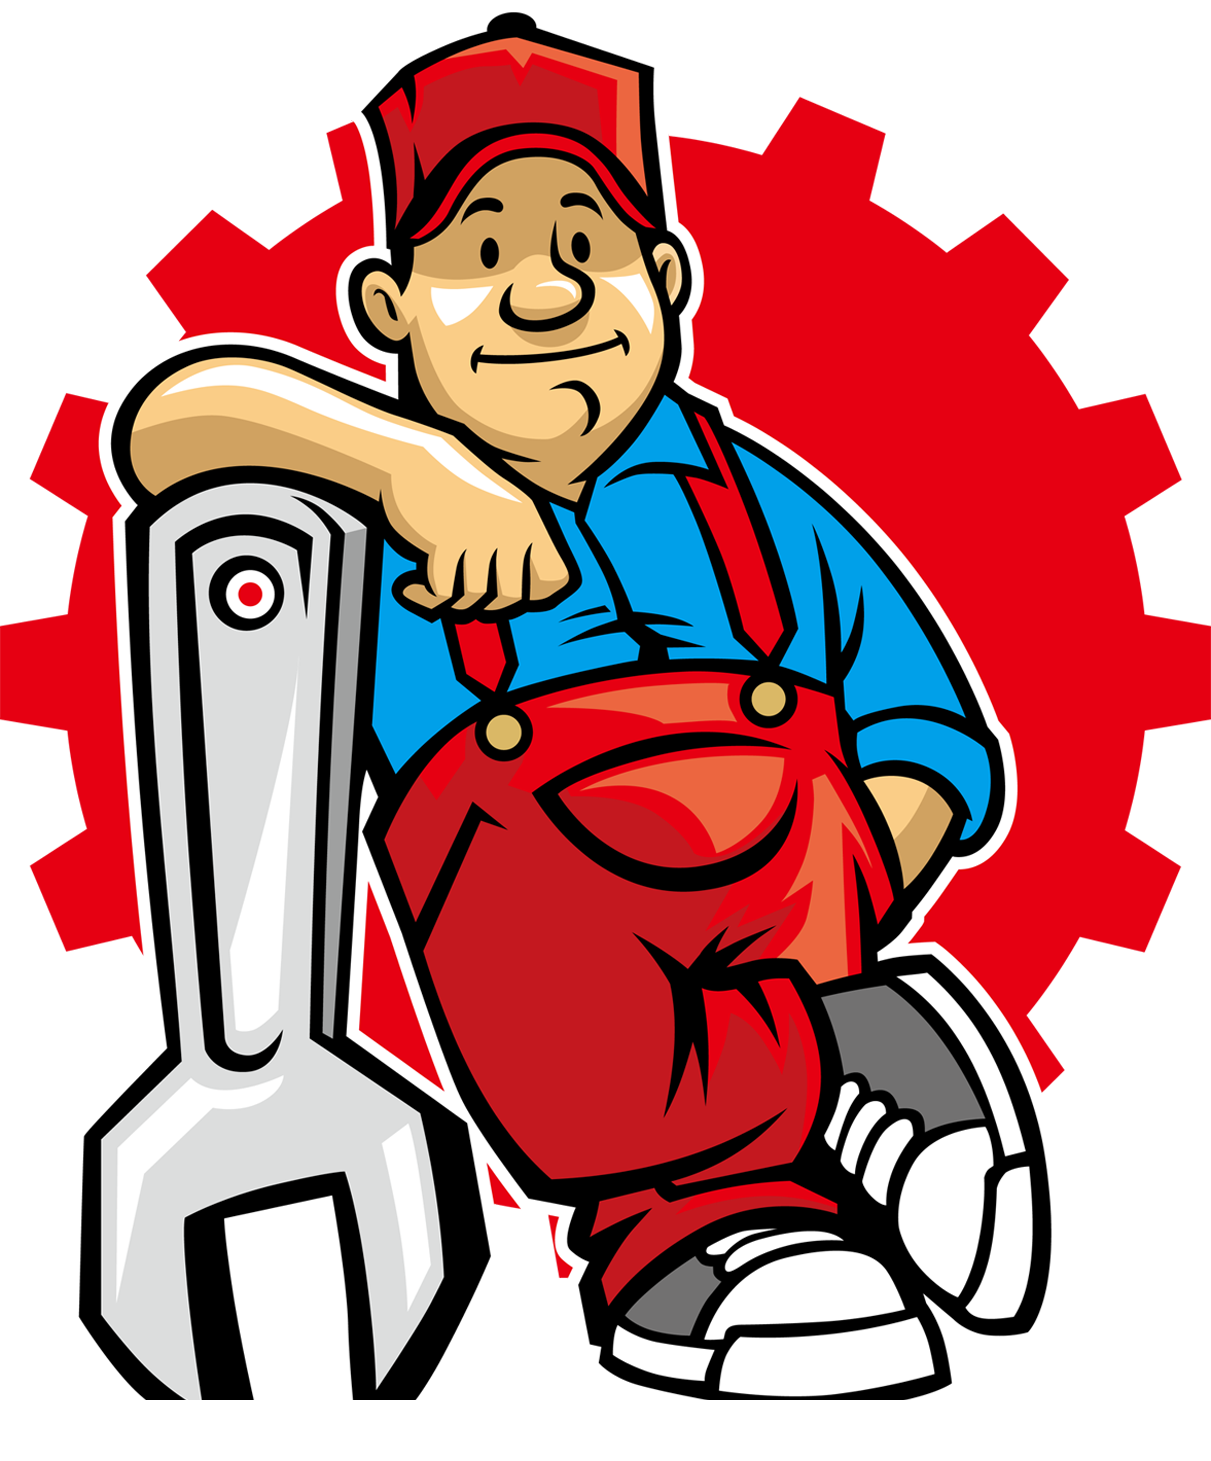 mechanic clipart maintenance person